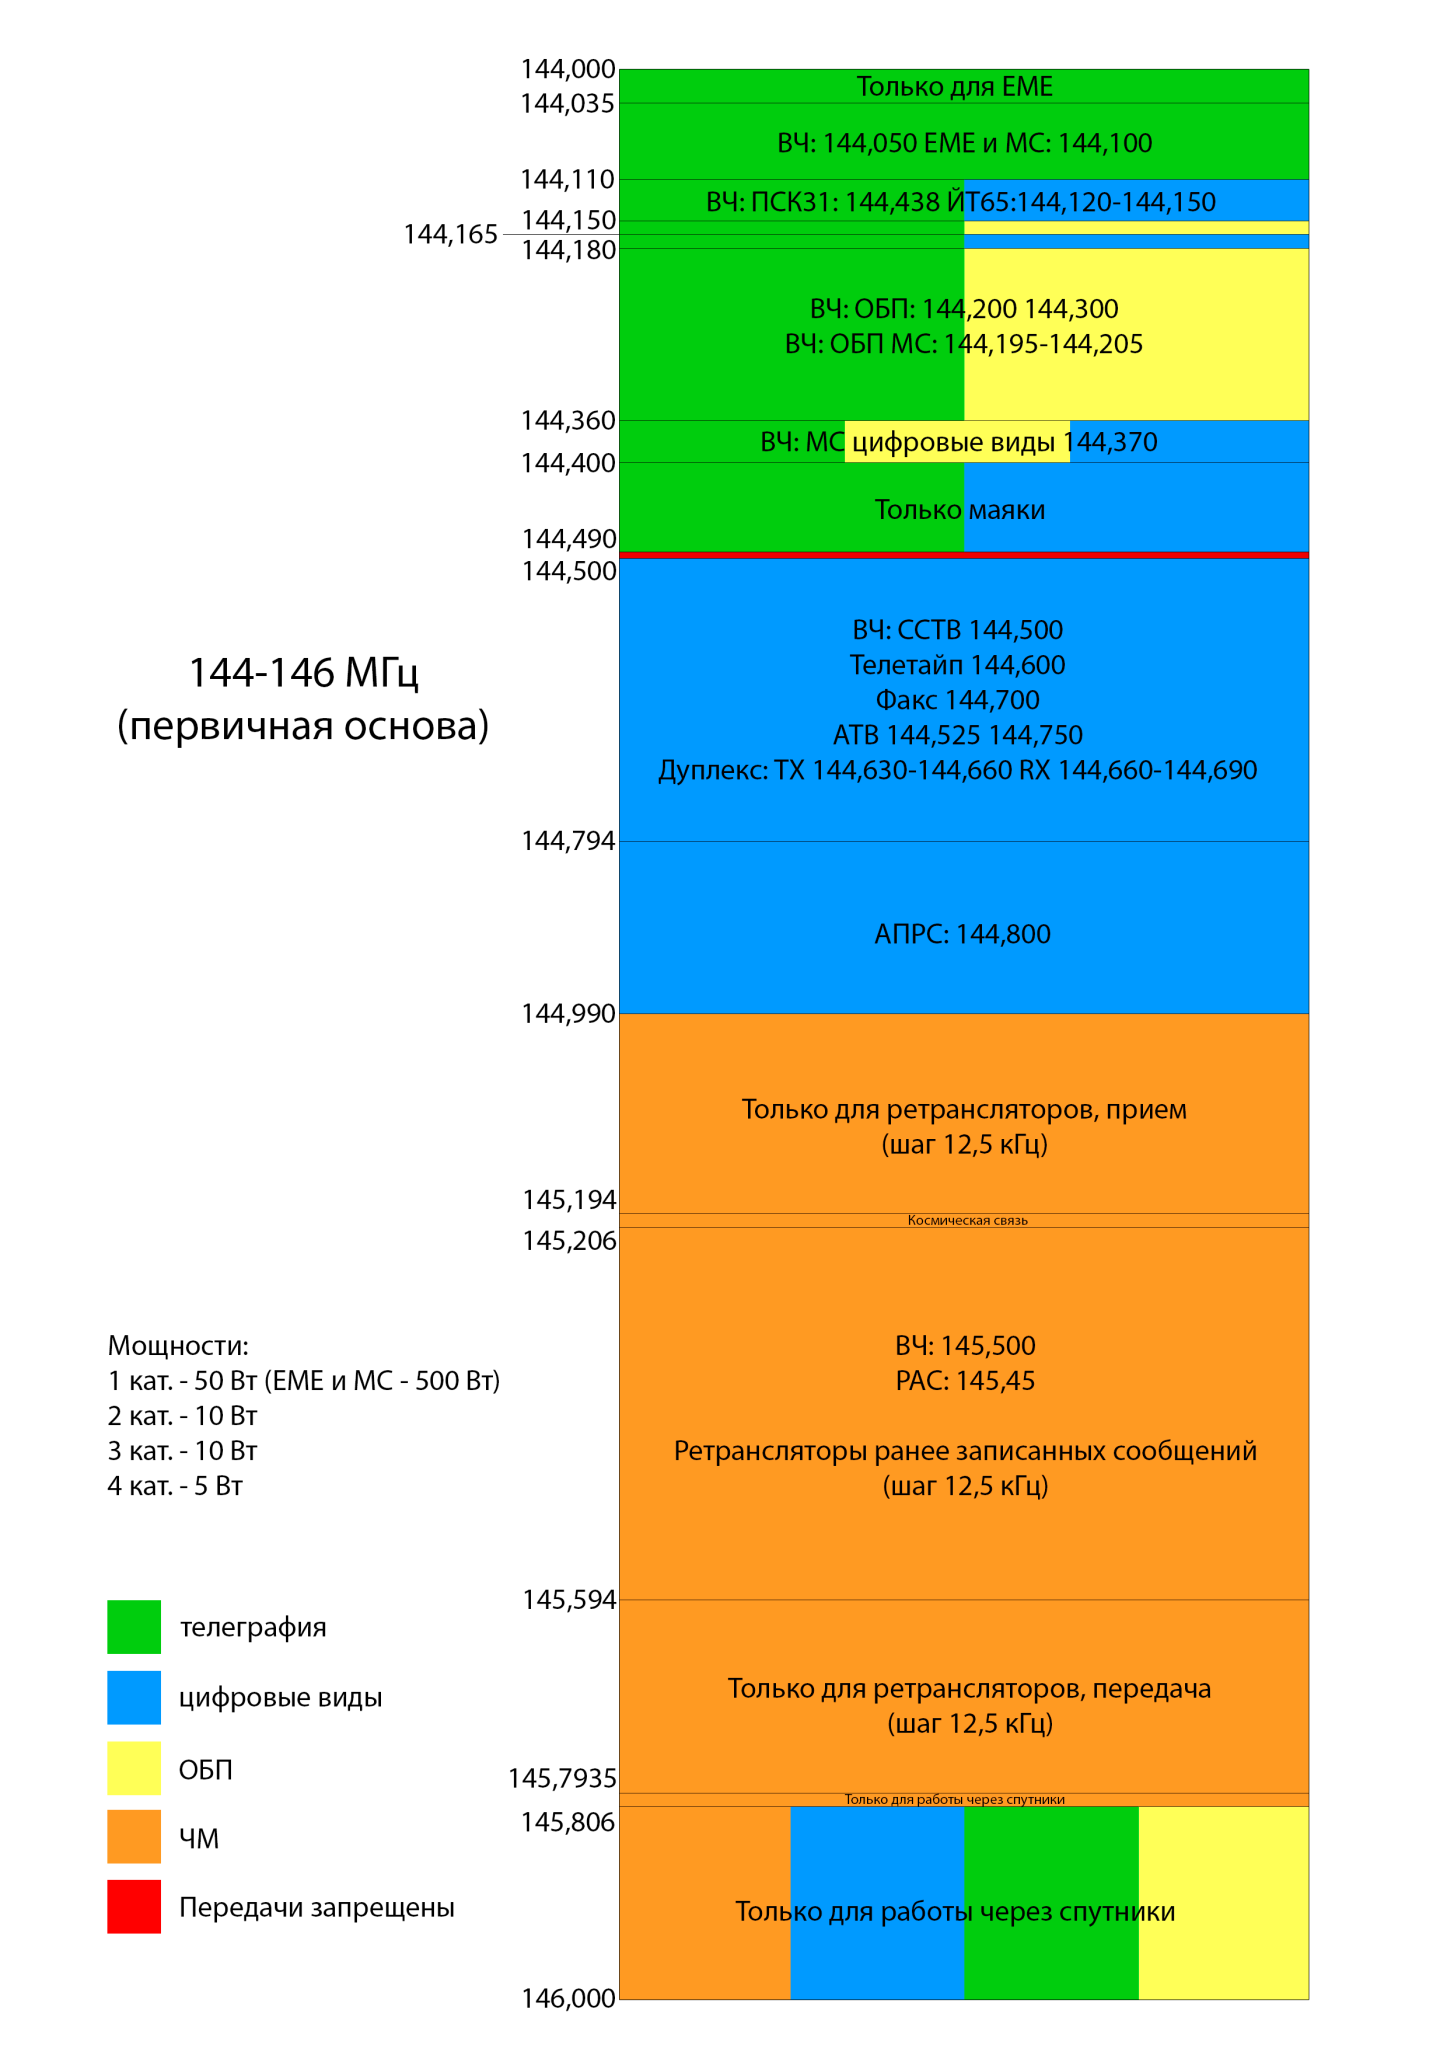 Радиочастотный план радиолюбительских диапазонов УКВ 2 м.